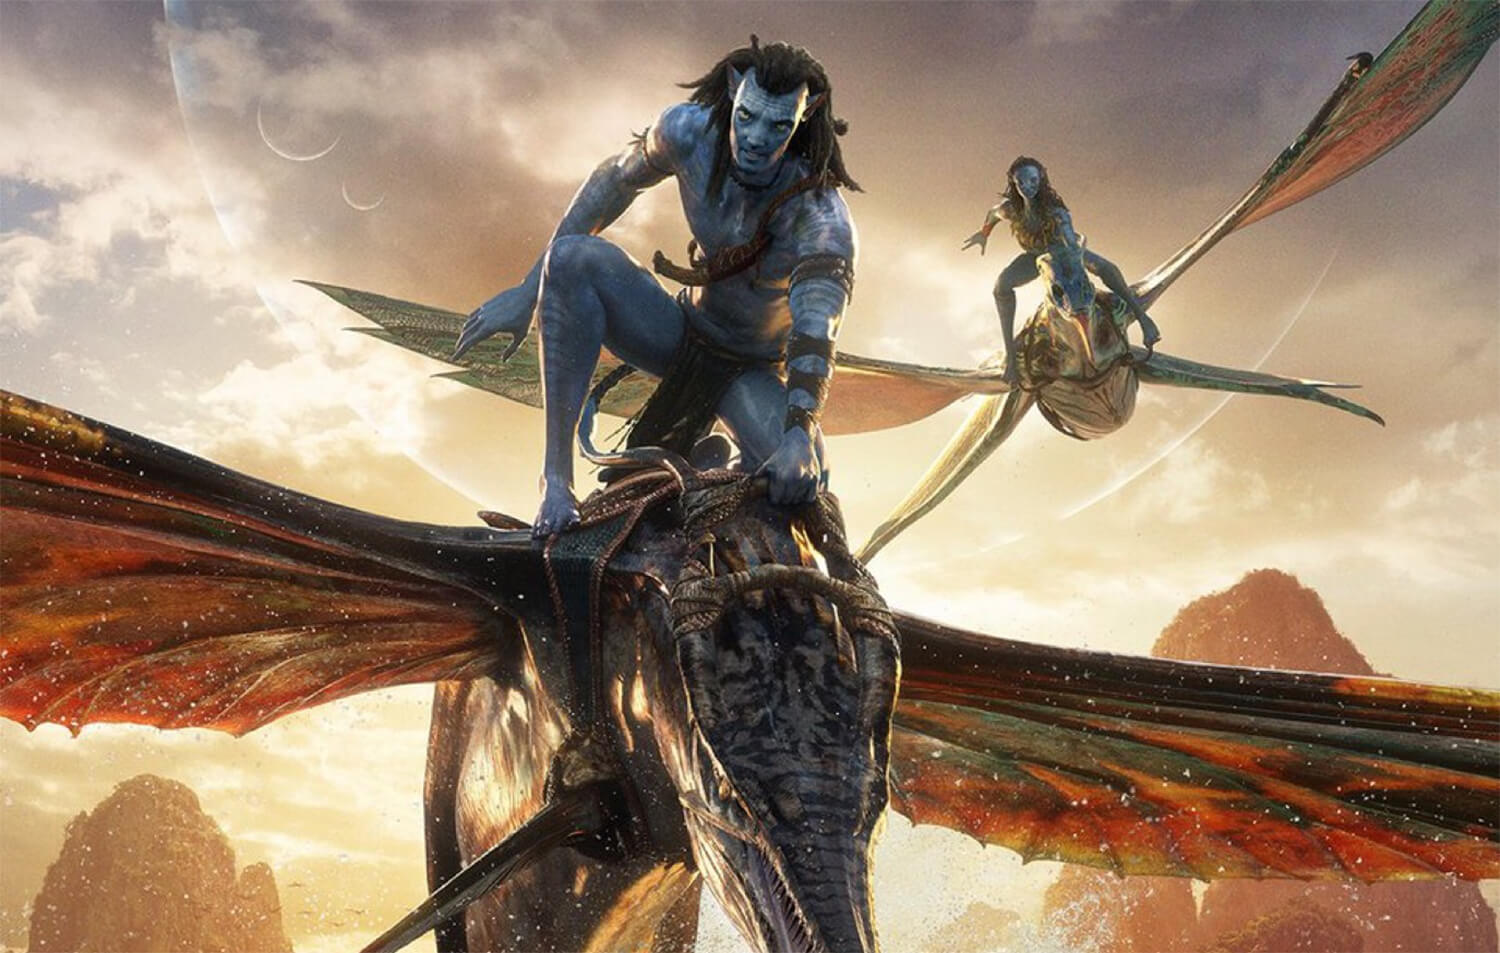 Lélegzetelállító lett az Avatar: A víz útja utolsó nagy előzetese